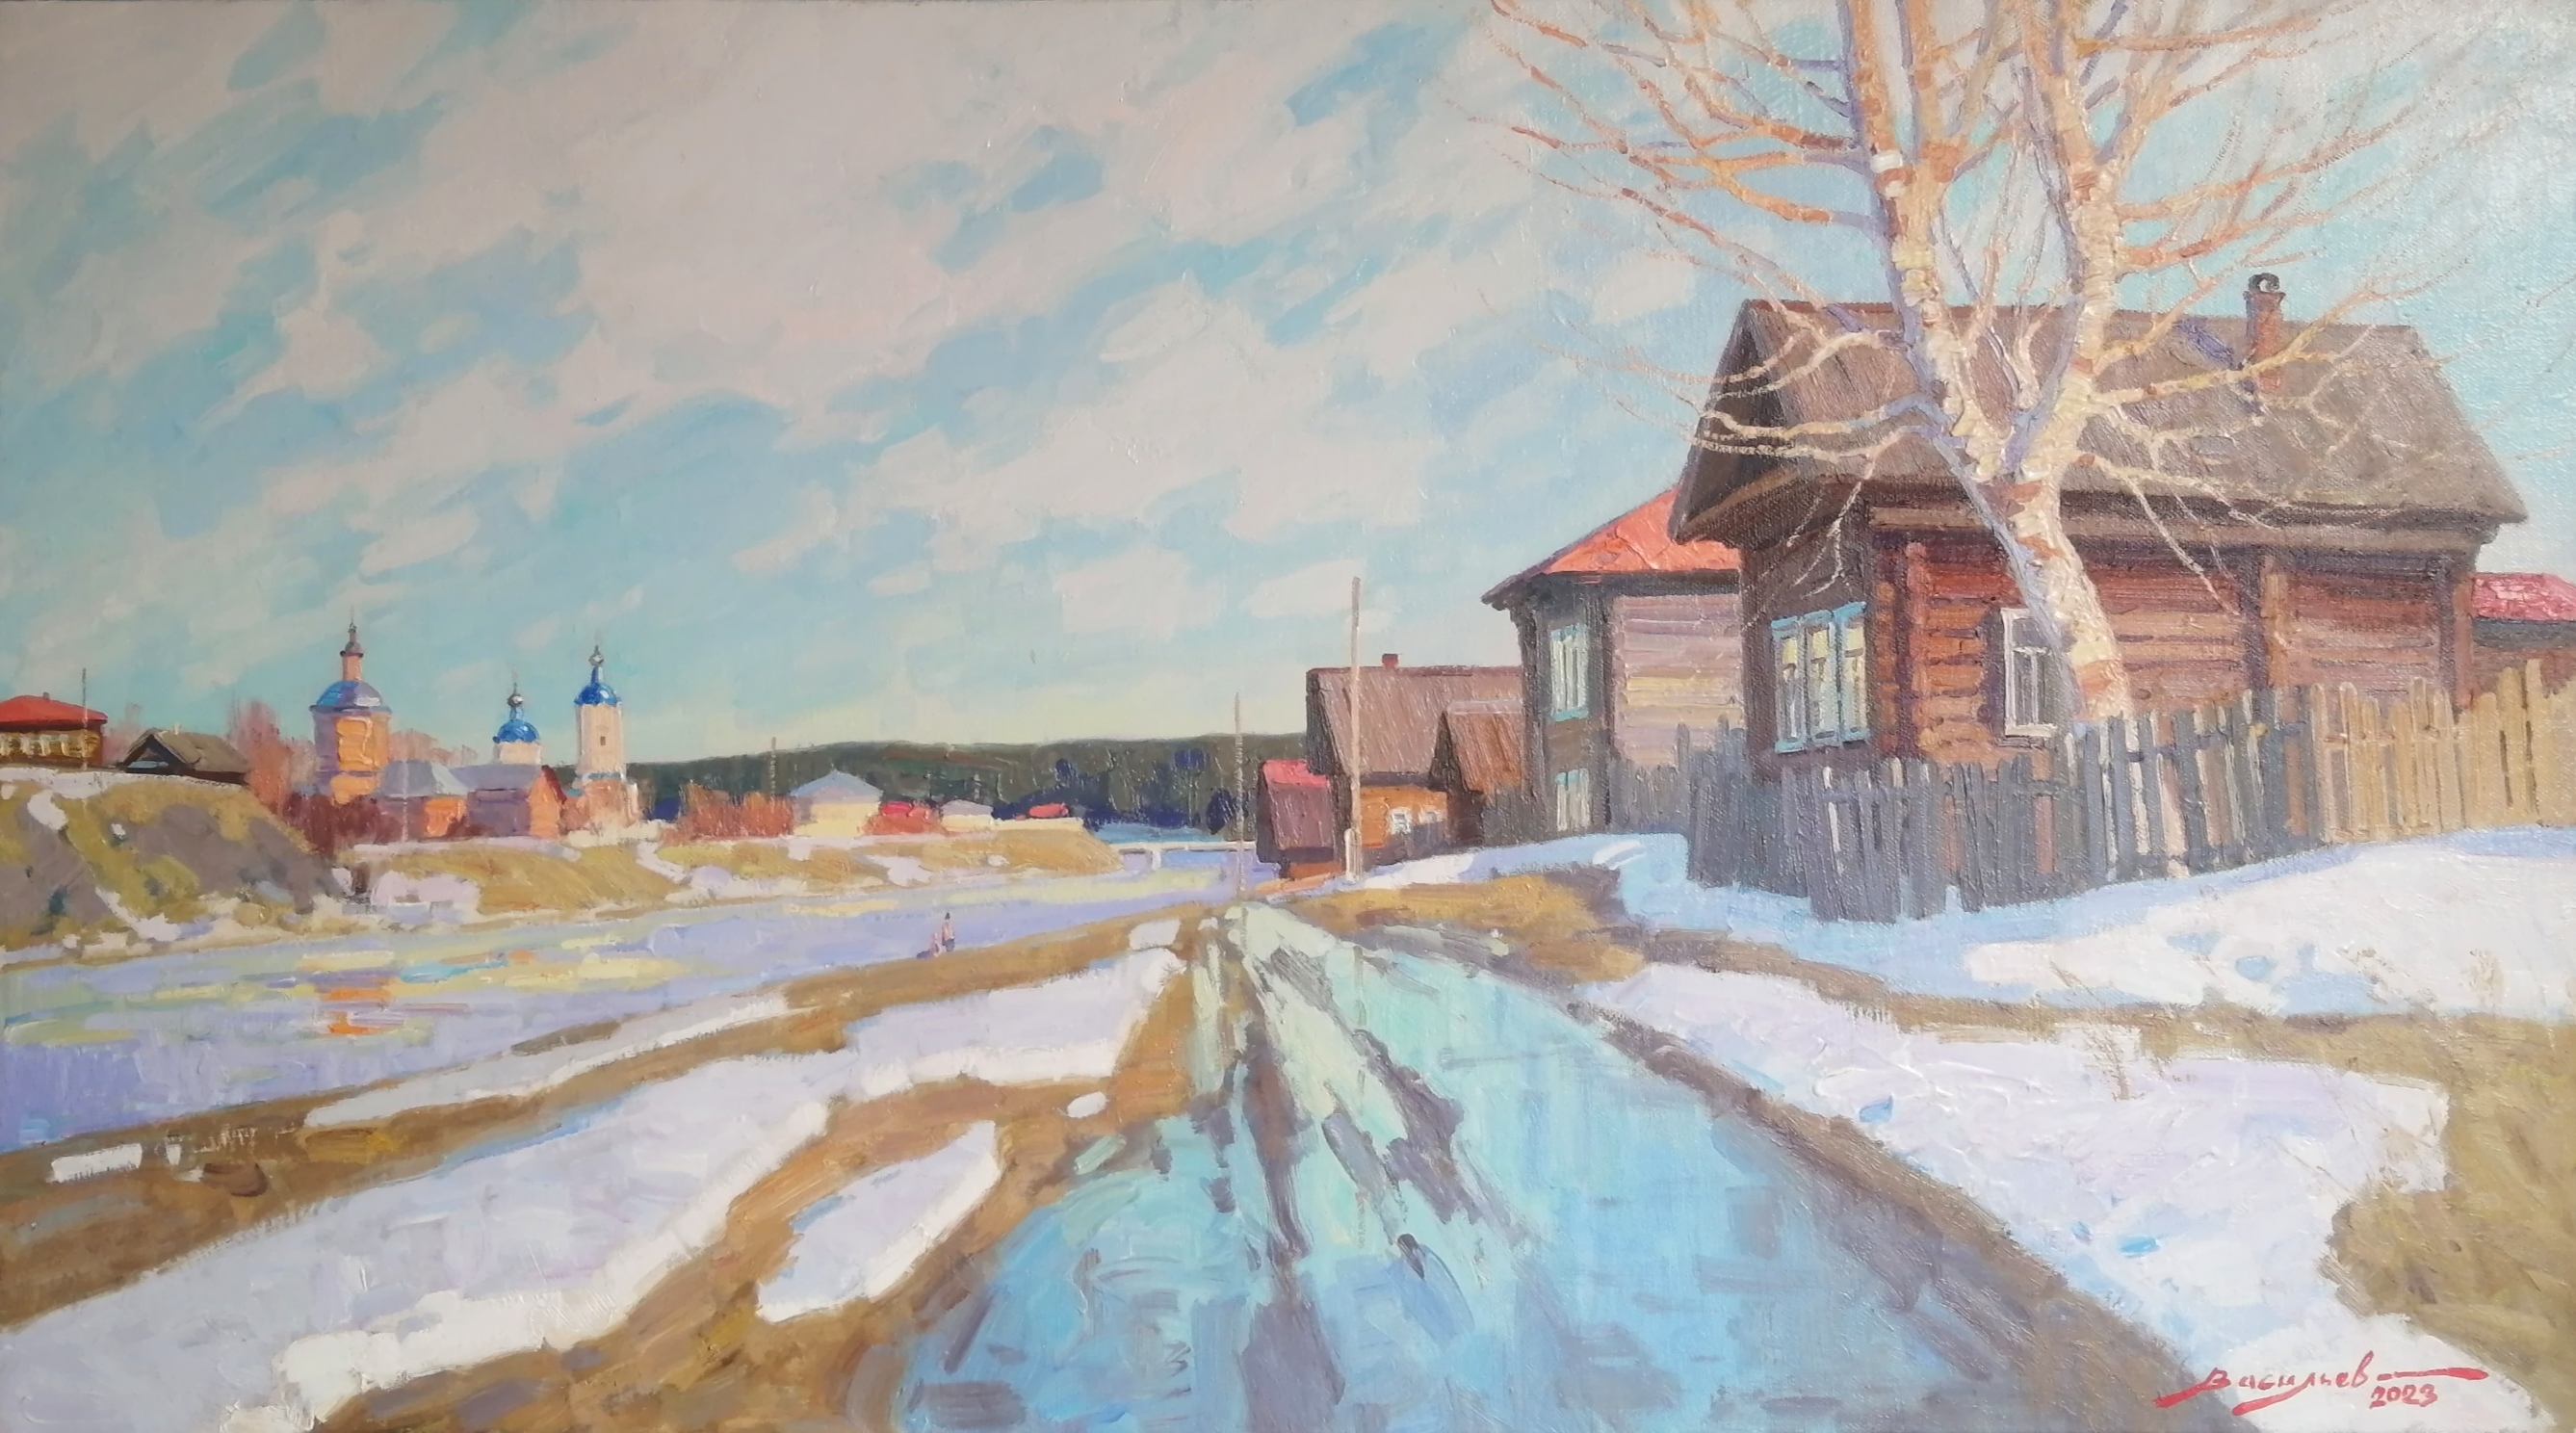 Verkhoturye. The Spring Has Begun - 1, Dmitry Vasiliev, Buy the painting Oil